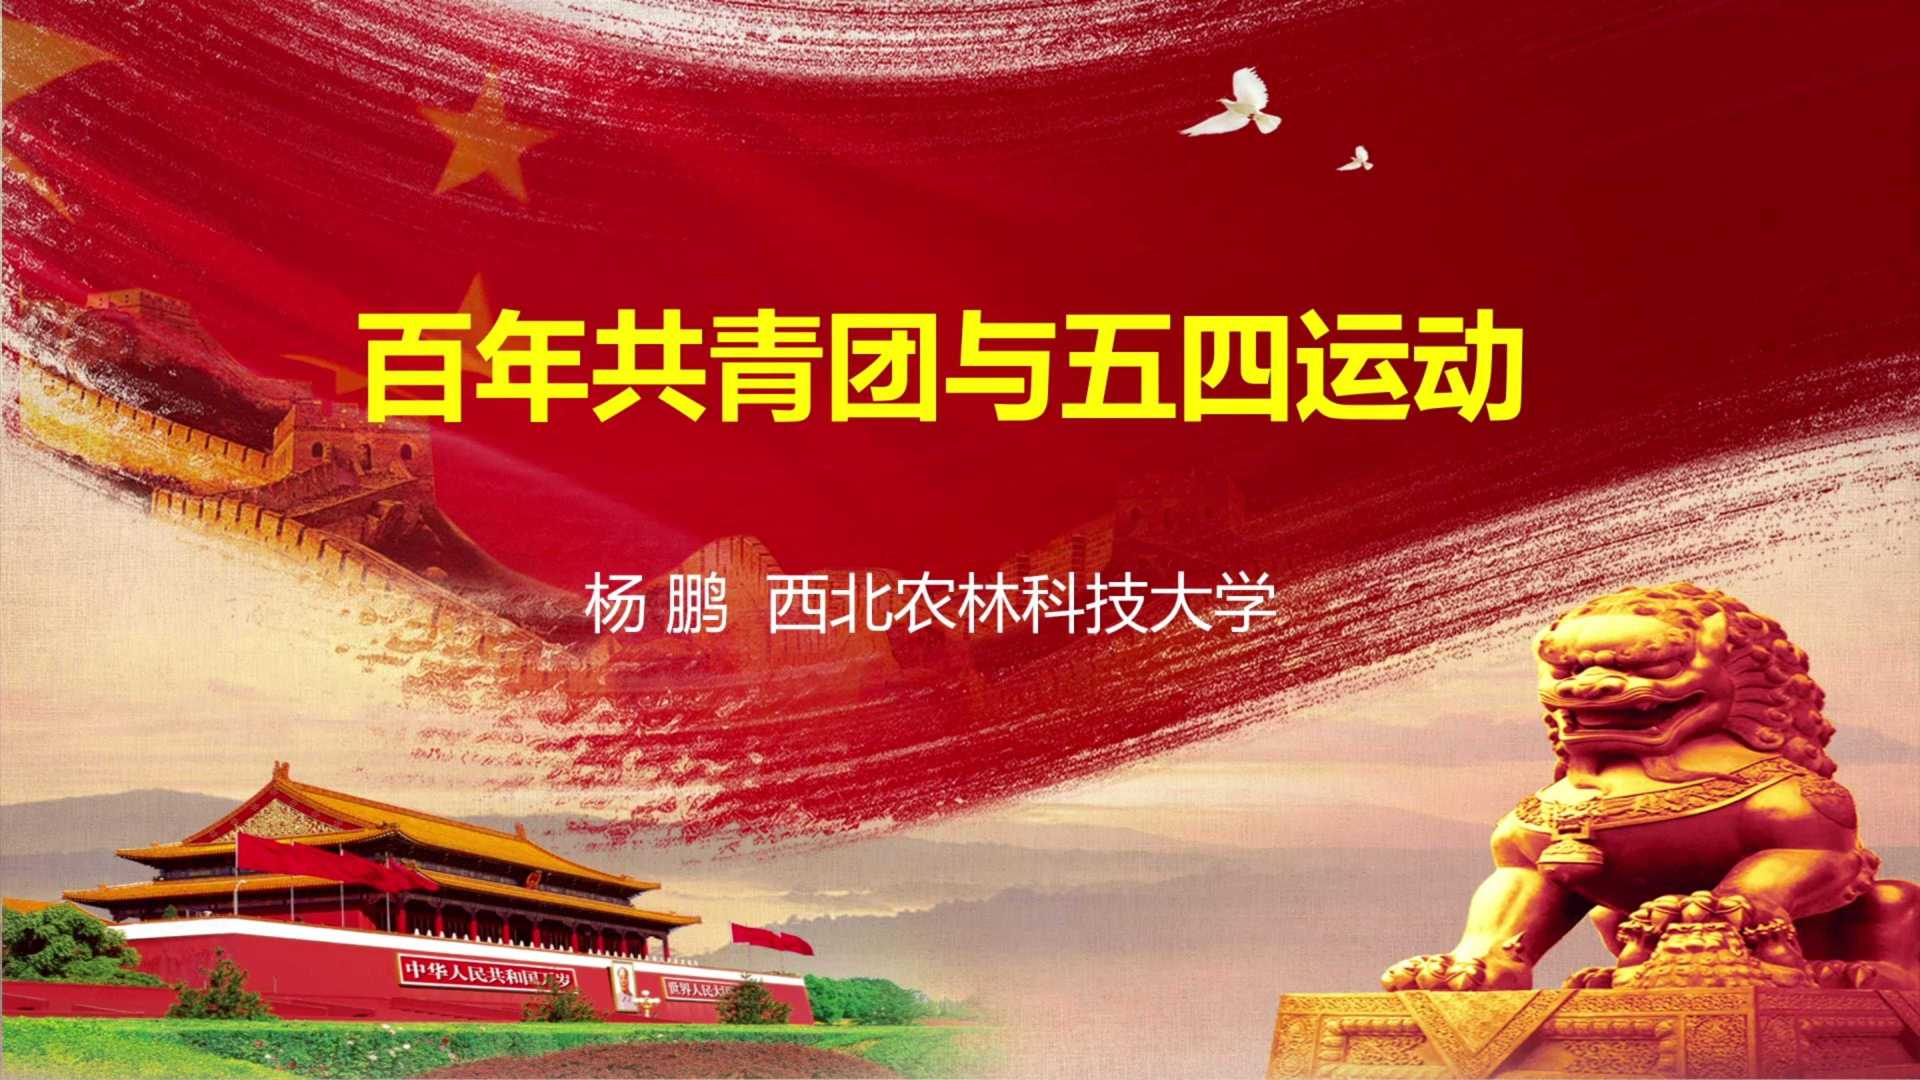 《百年共青团与五四运动》西北农林科技大学杨鹏教授